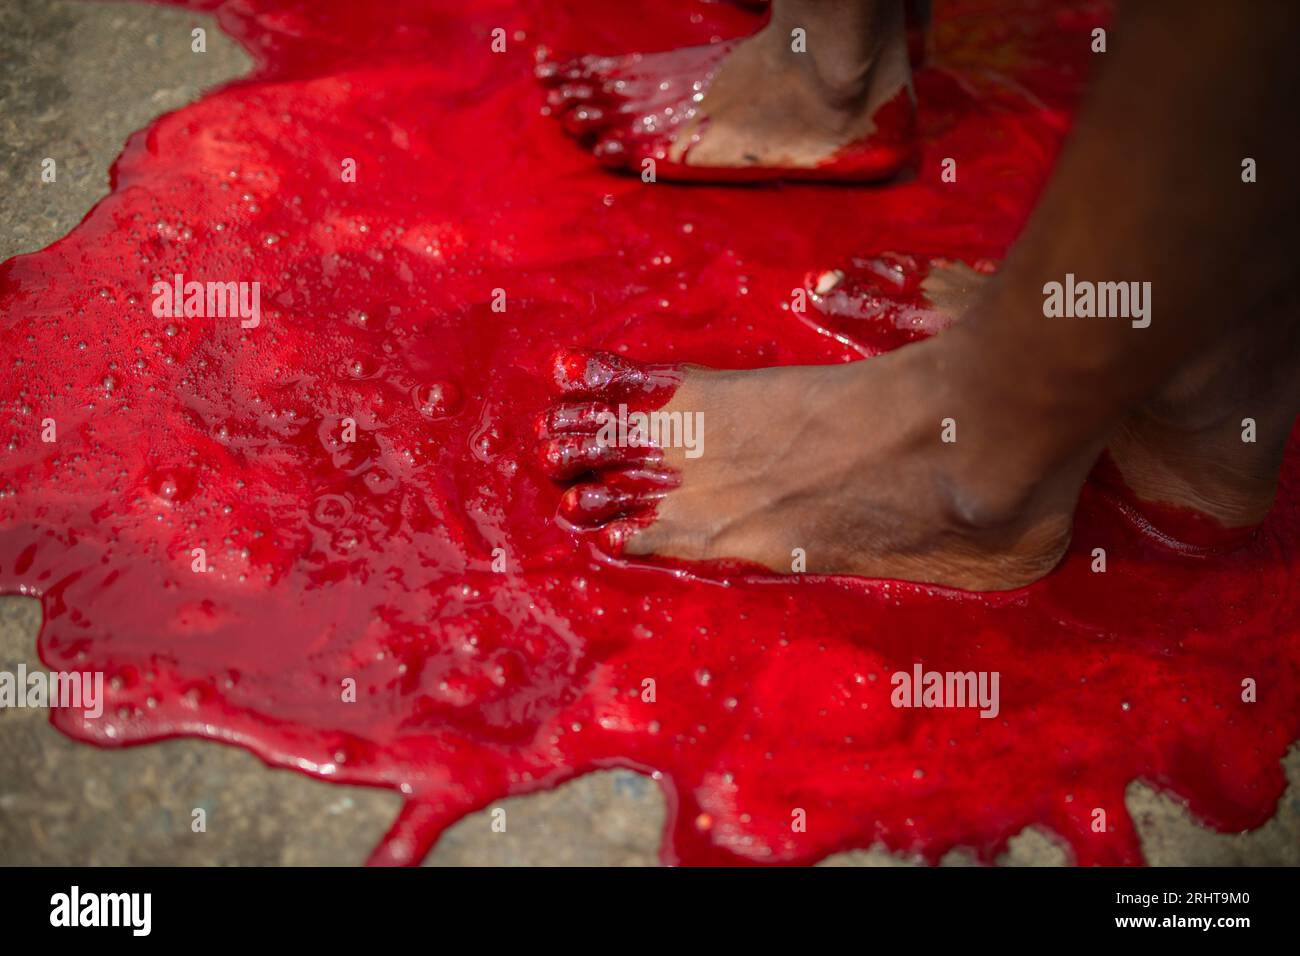 Les musulmans trempent leurs pieds dans le sang après avoir massacré un animal dans la rue à Dhaka pour le plus grand festival musulman Eid-ul-Azha également connu sous le nom d'Eid Banque D'Images